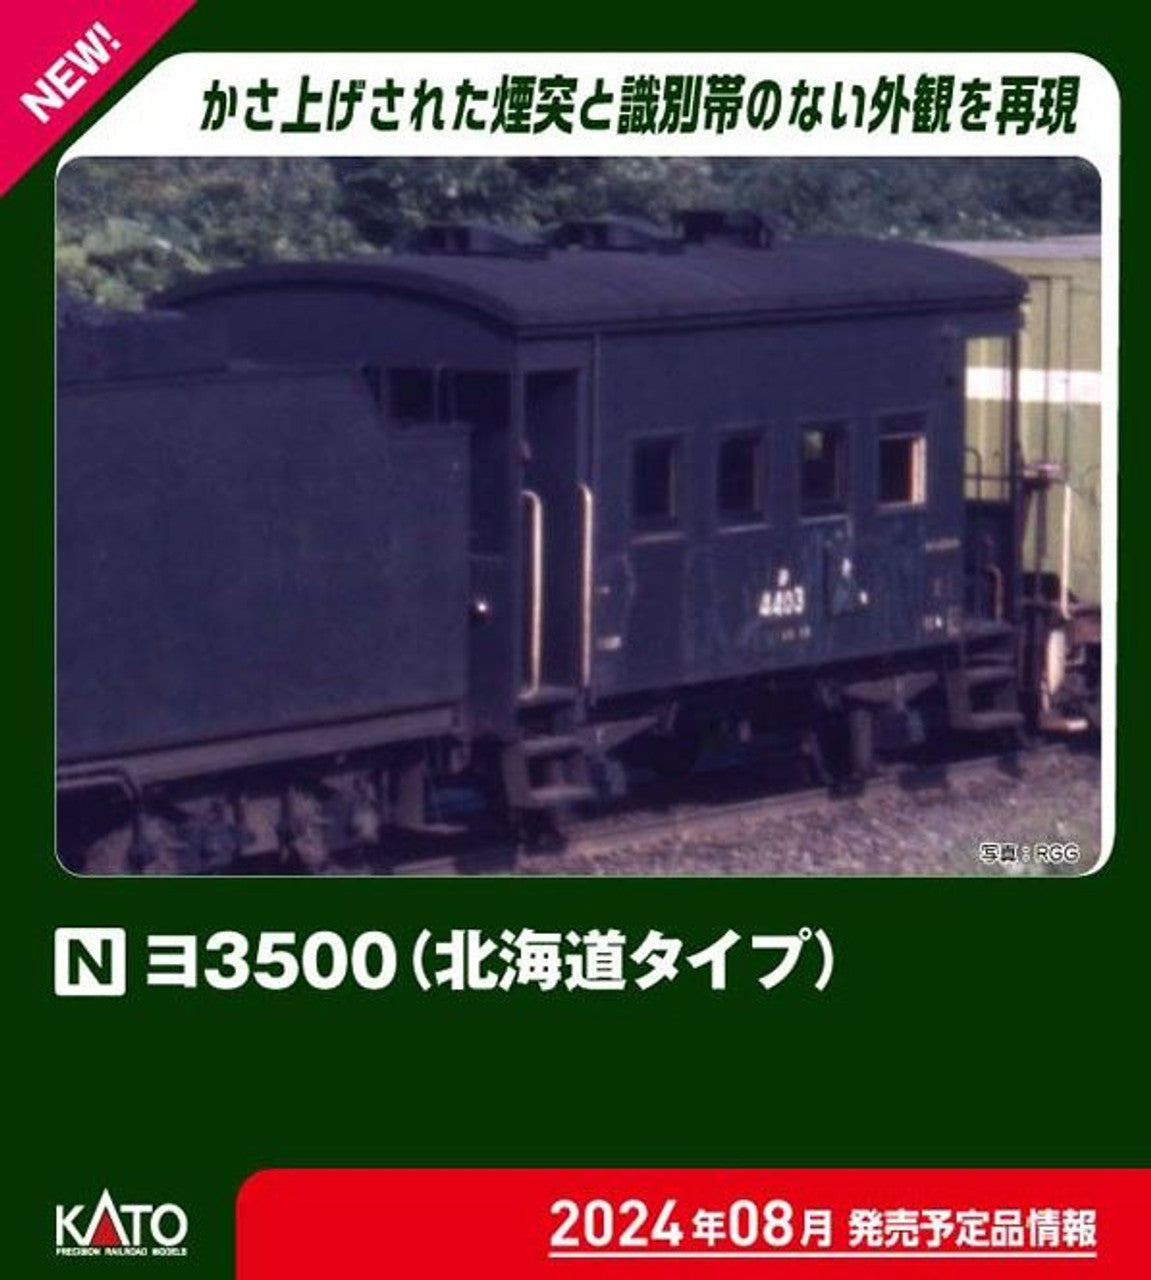 Kato [PO AUG 2024] 8035-2 Freight Car YO 3500 (Hokkaido Type) (N scale)